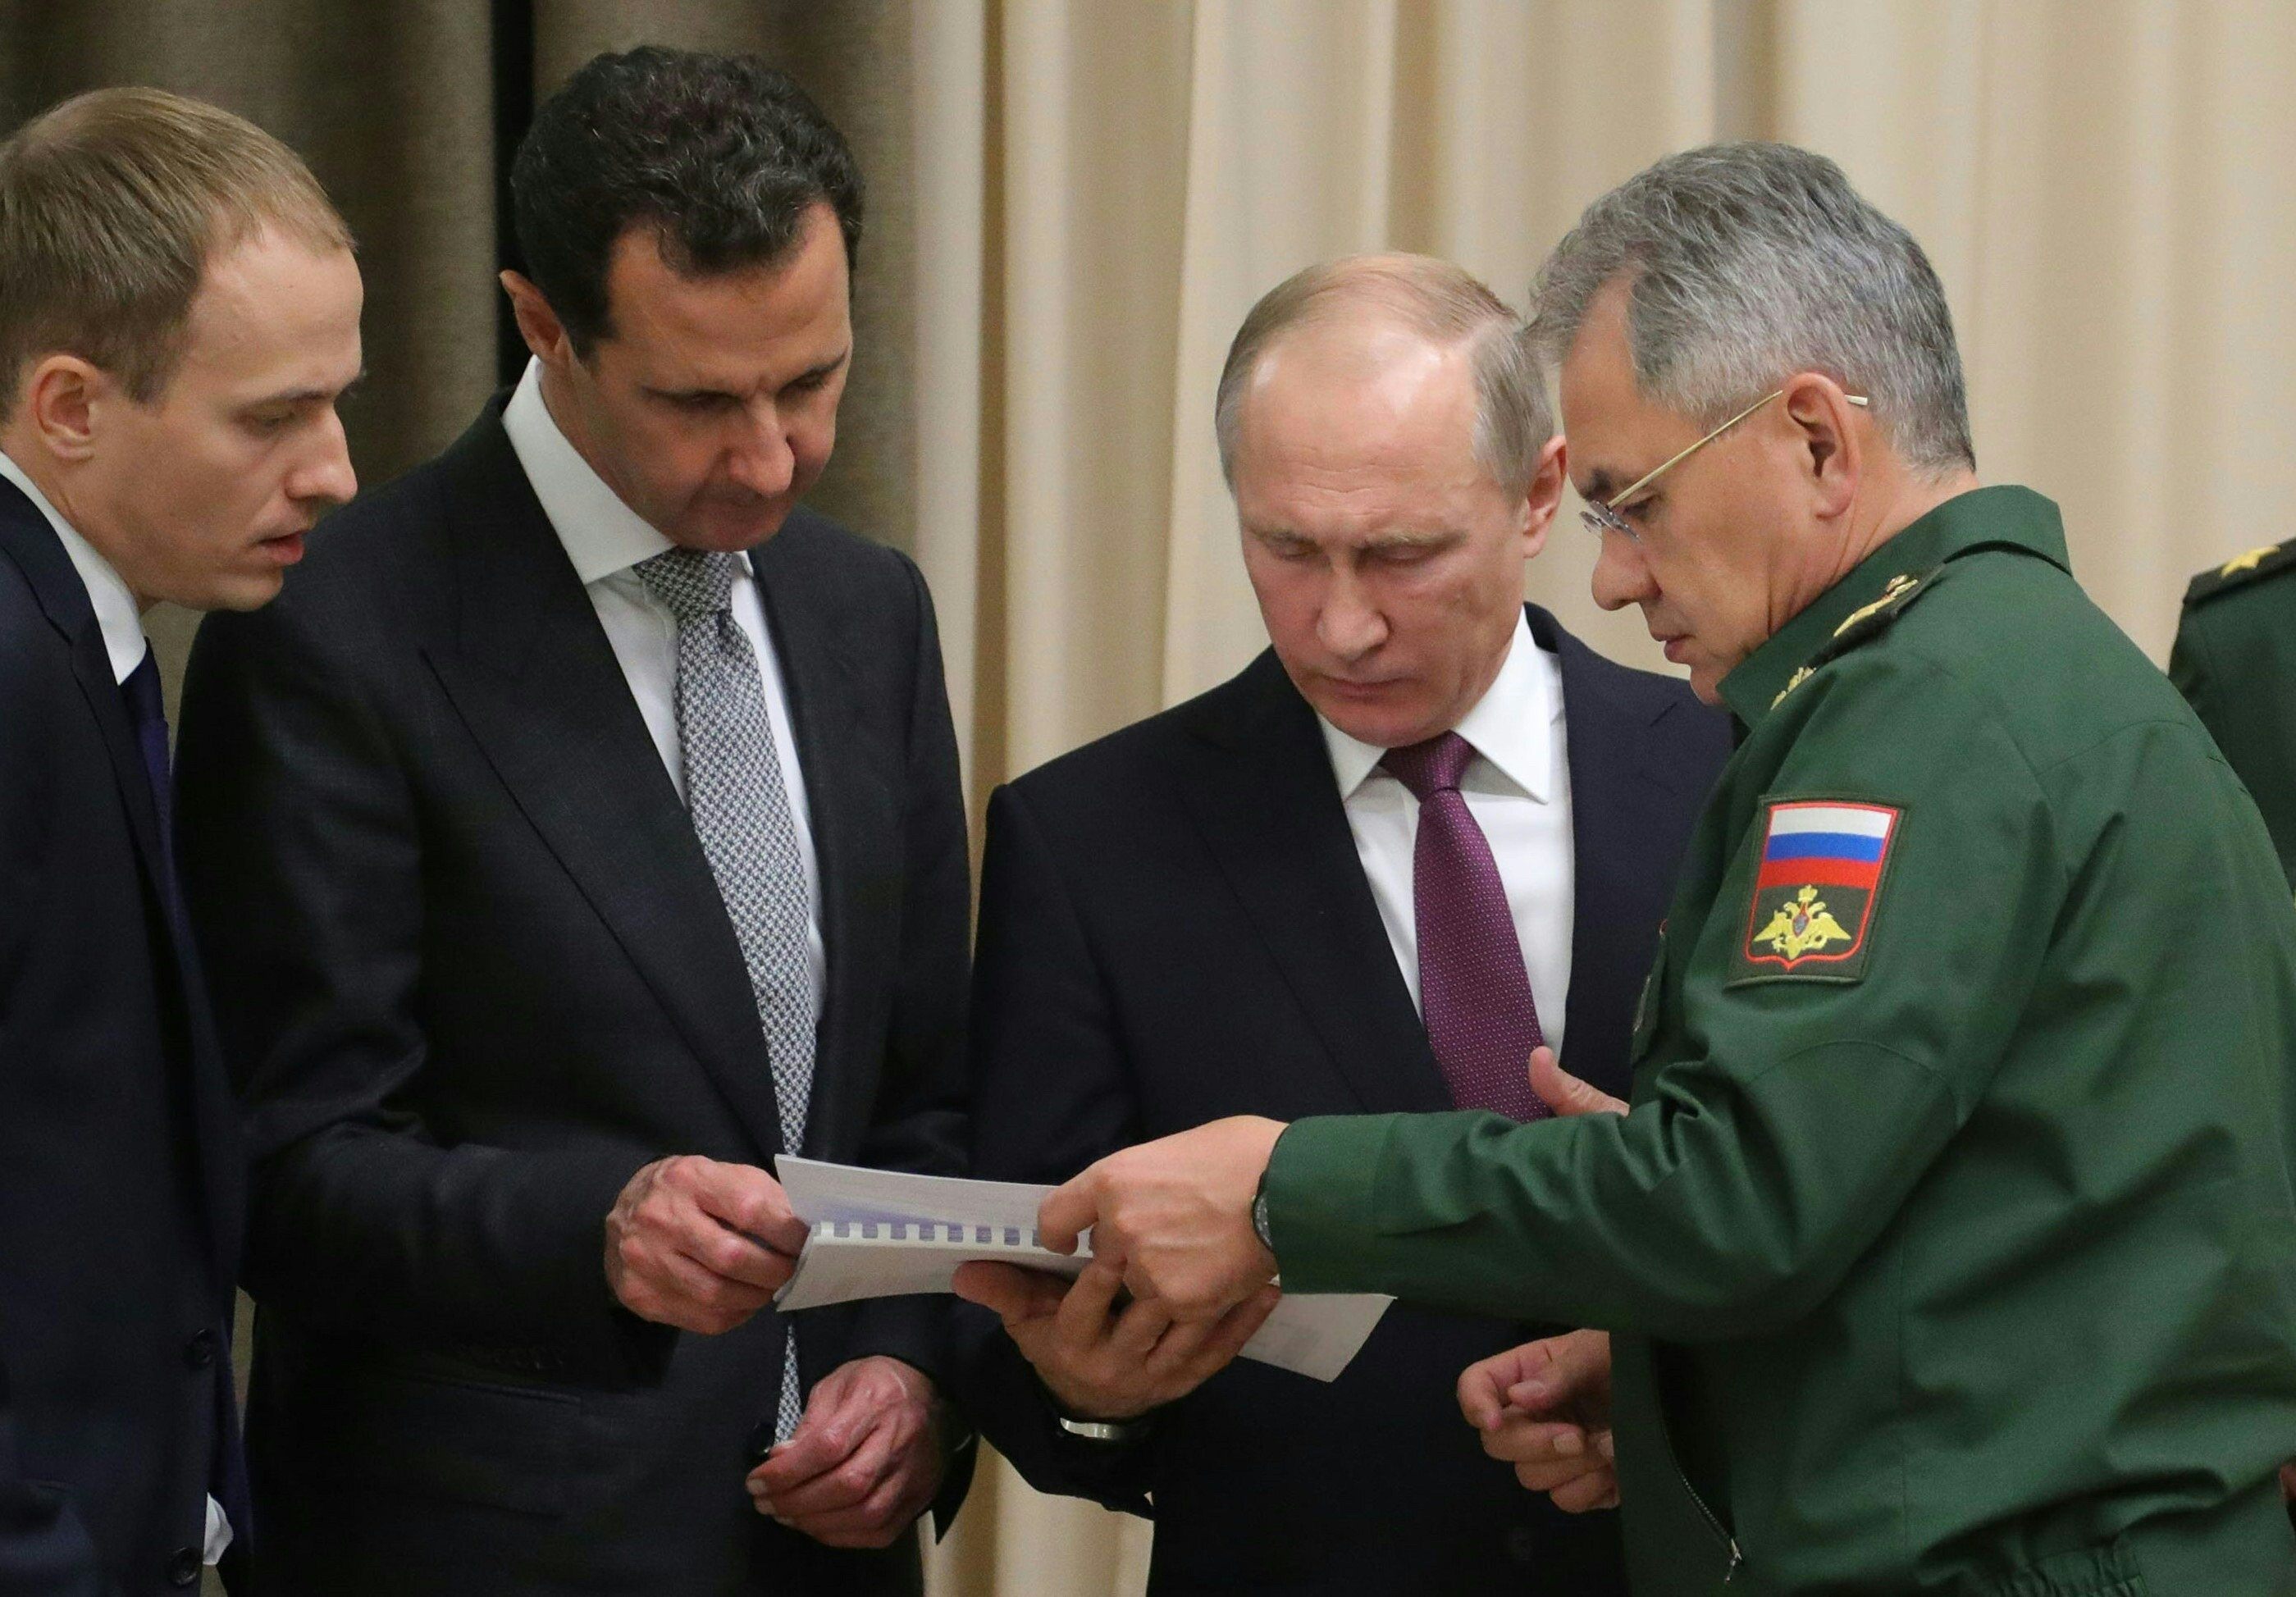 الأسد يتحدث مع بوتين وجنرال روسى